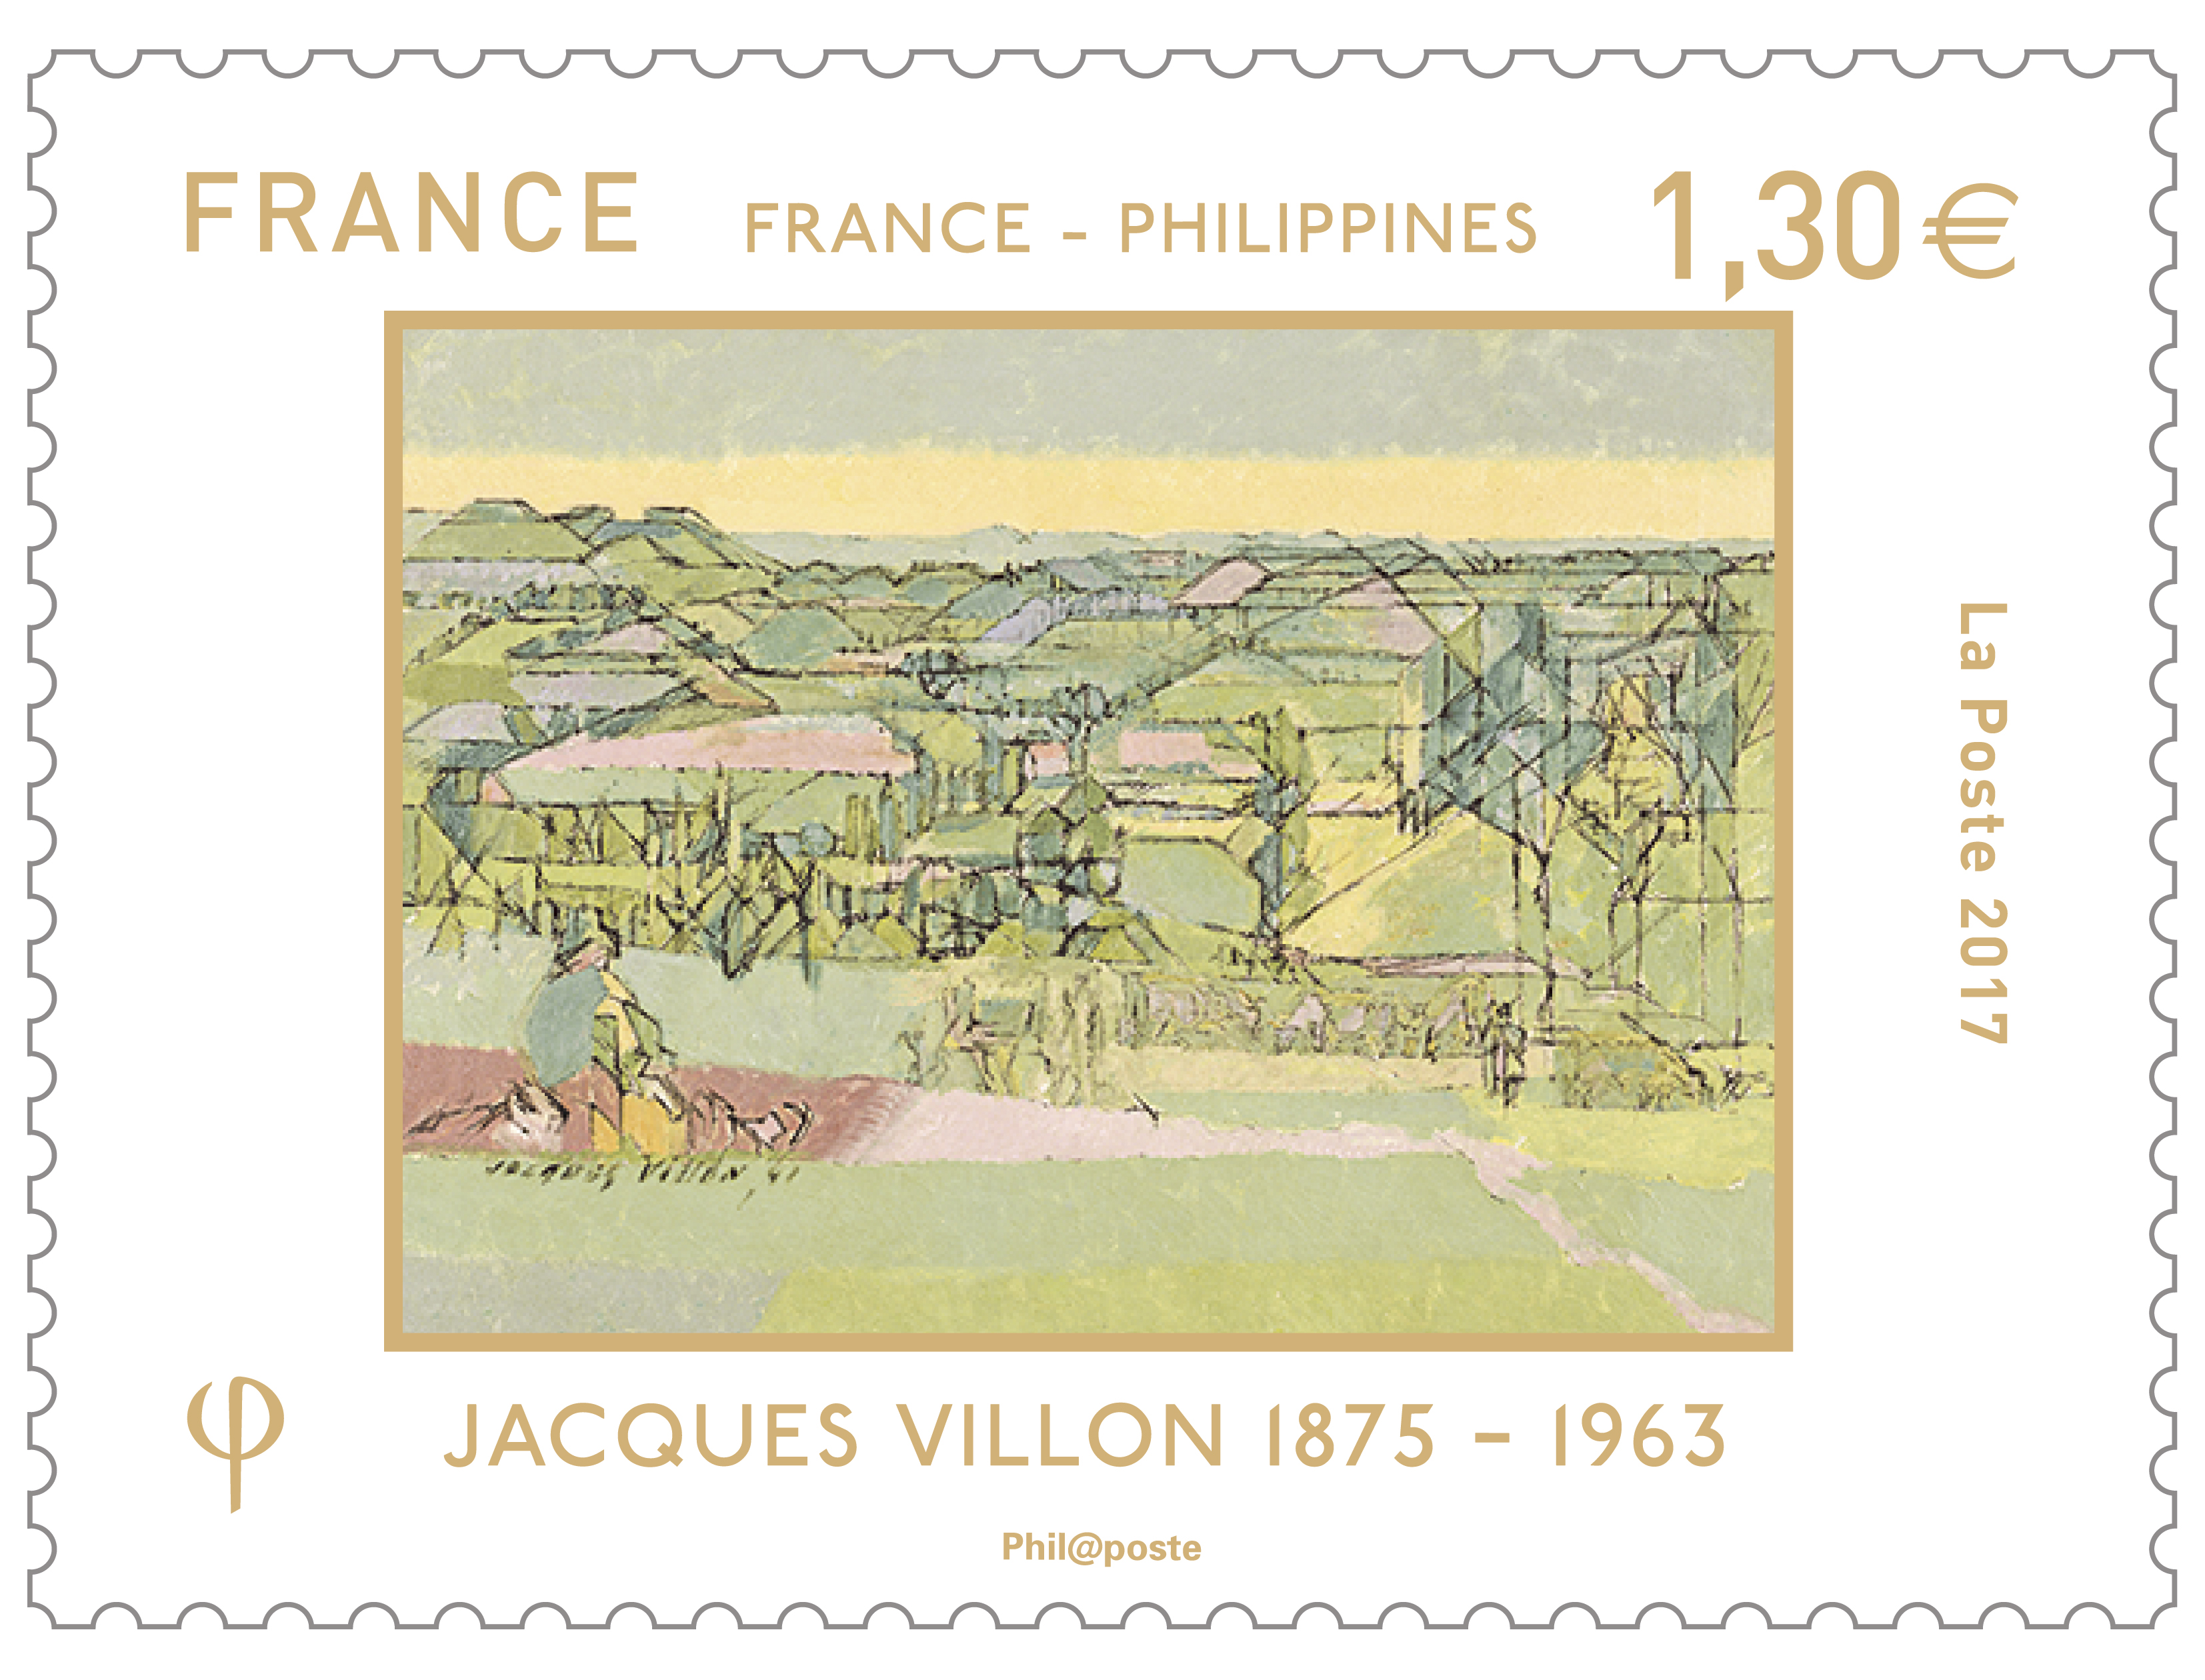 France - Philippines - Jacques Villon 1875 - 1963